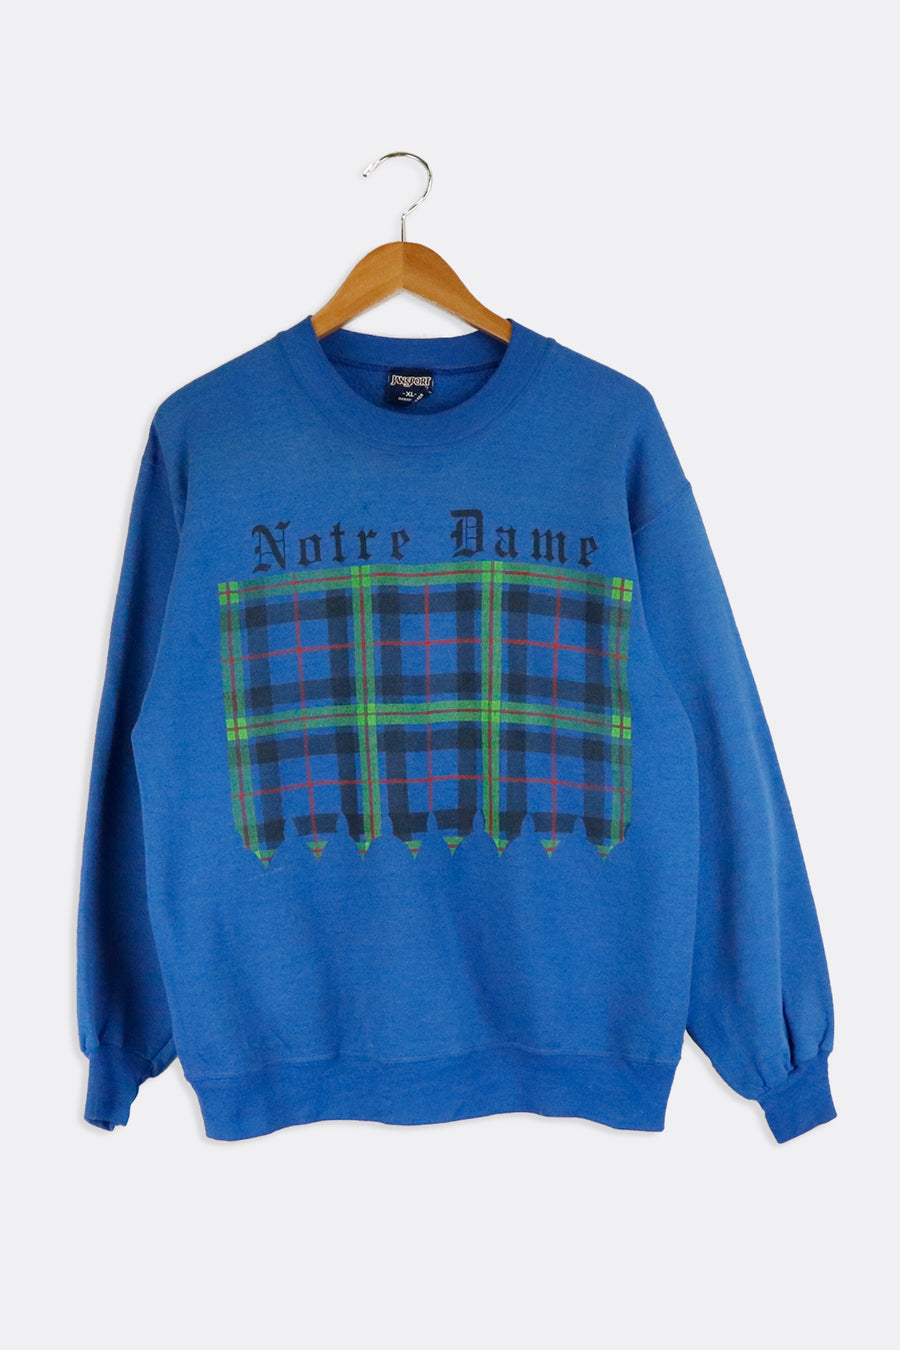 Vintage Notre Dame Plaid Design Sweatshirt Sz XL